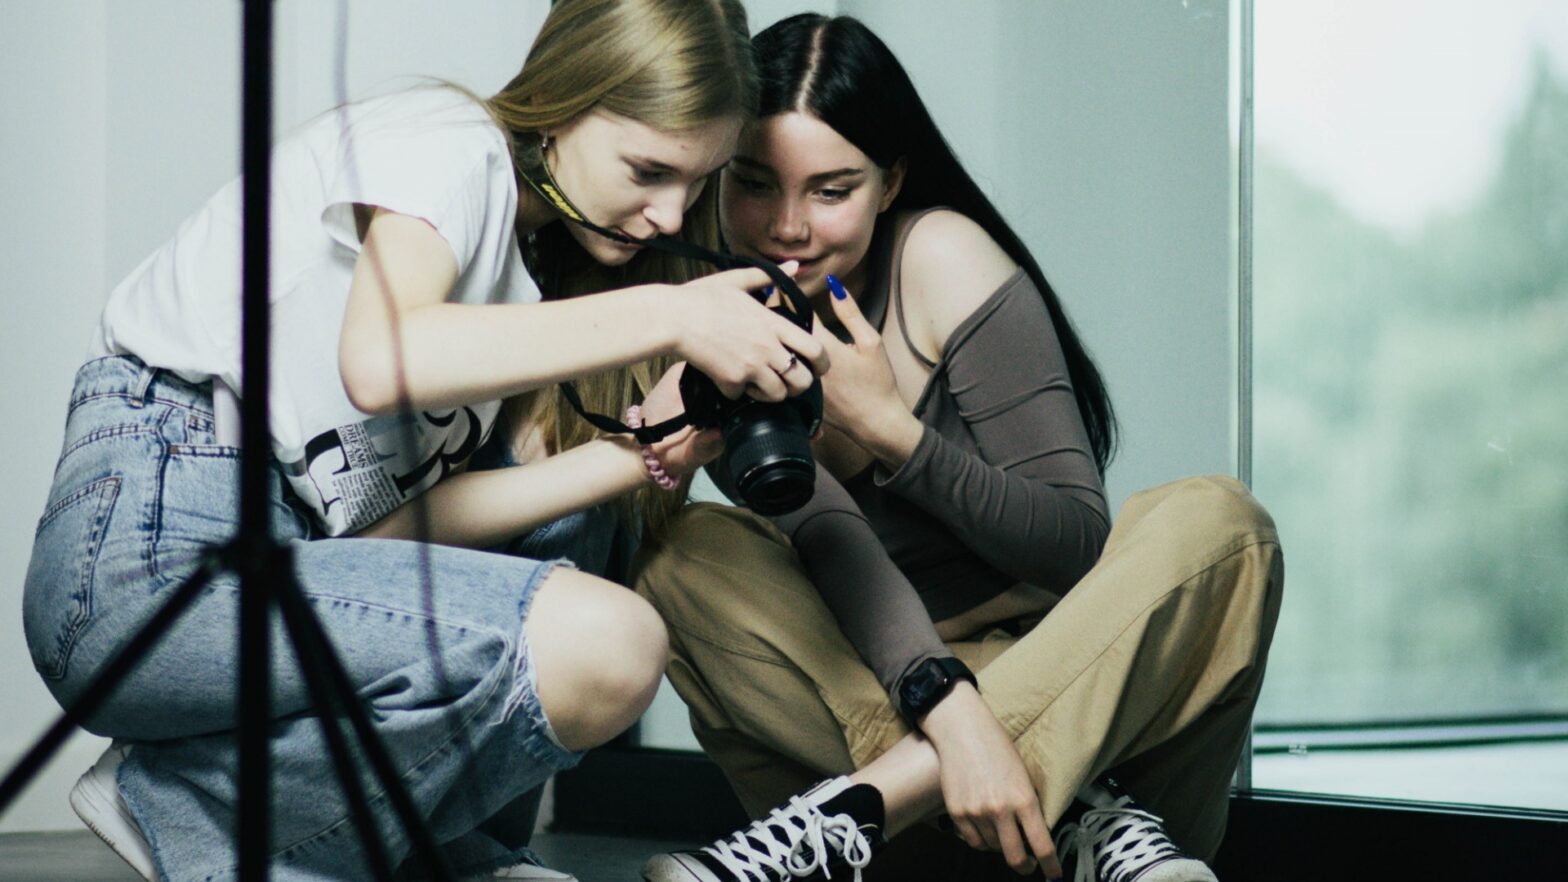 Dwie młode dziewczyny patrzą w wyświetlacz aparatu fotograficznego.